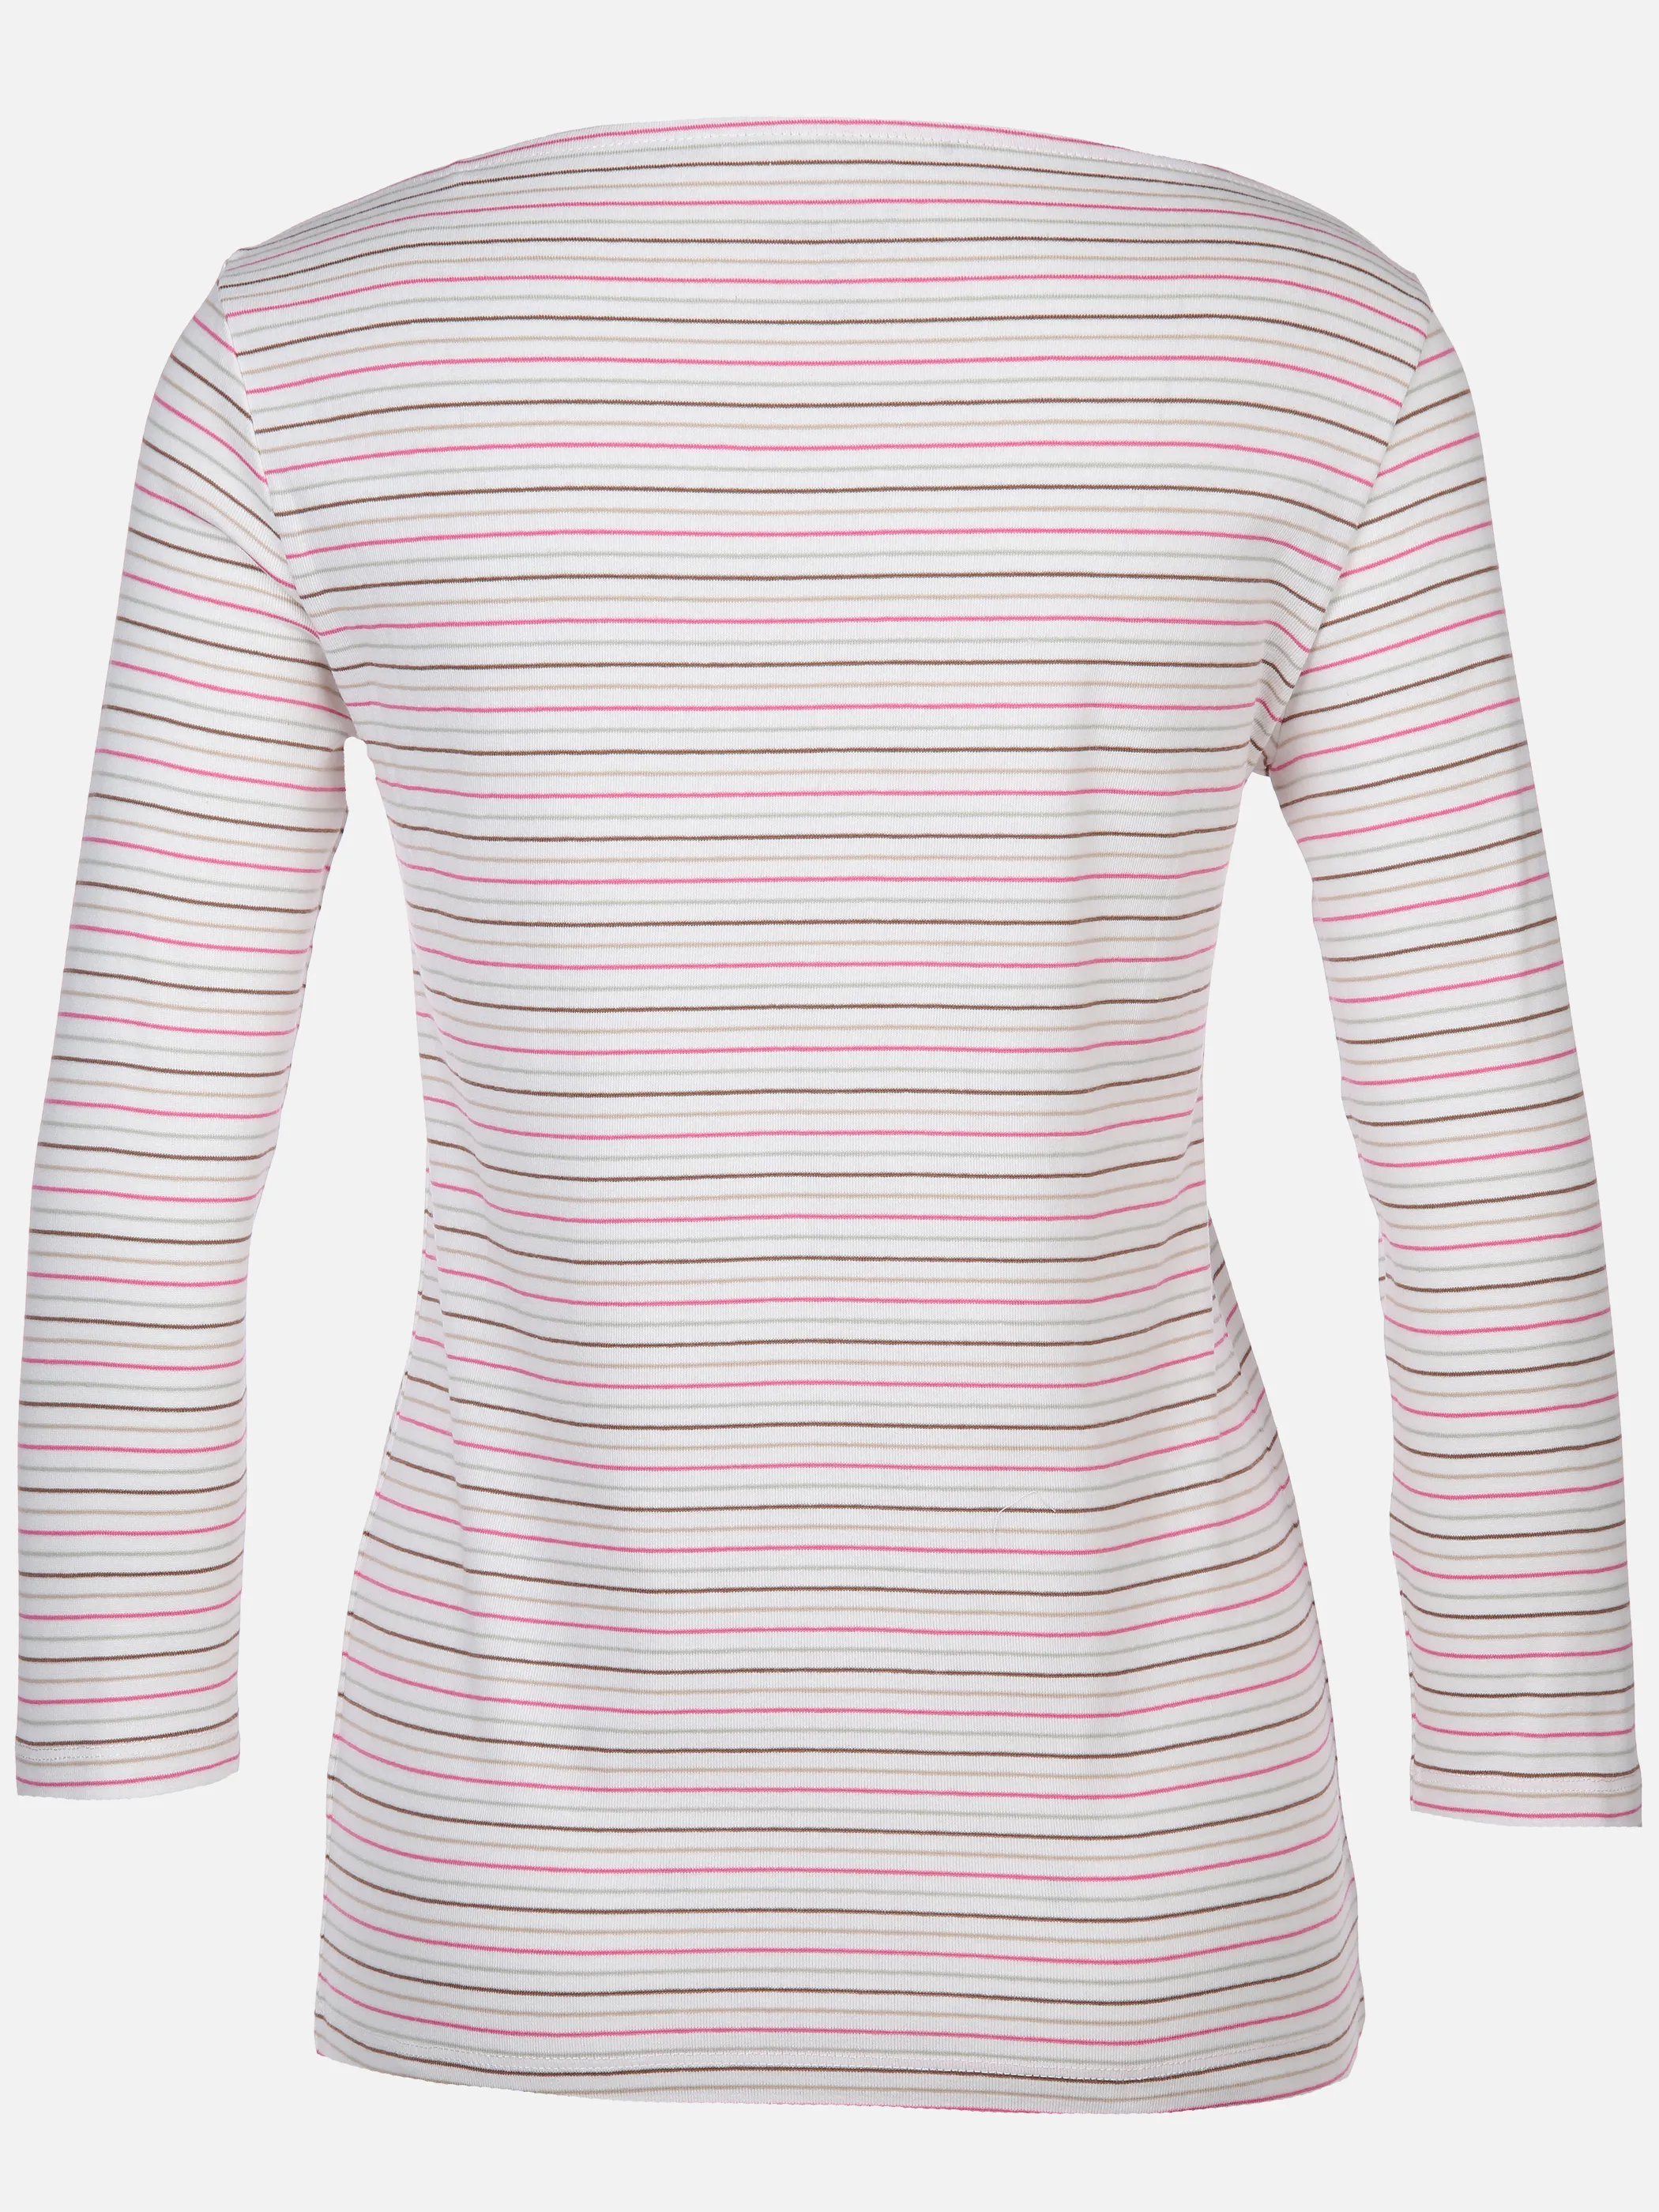 Tom Tailor 1040545 NOS T-shirt boat neck stripe Pink 890585 35715 2